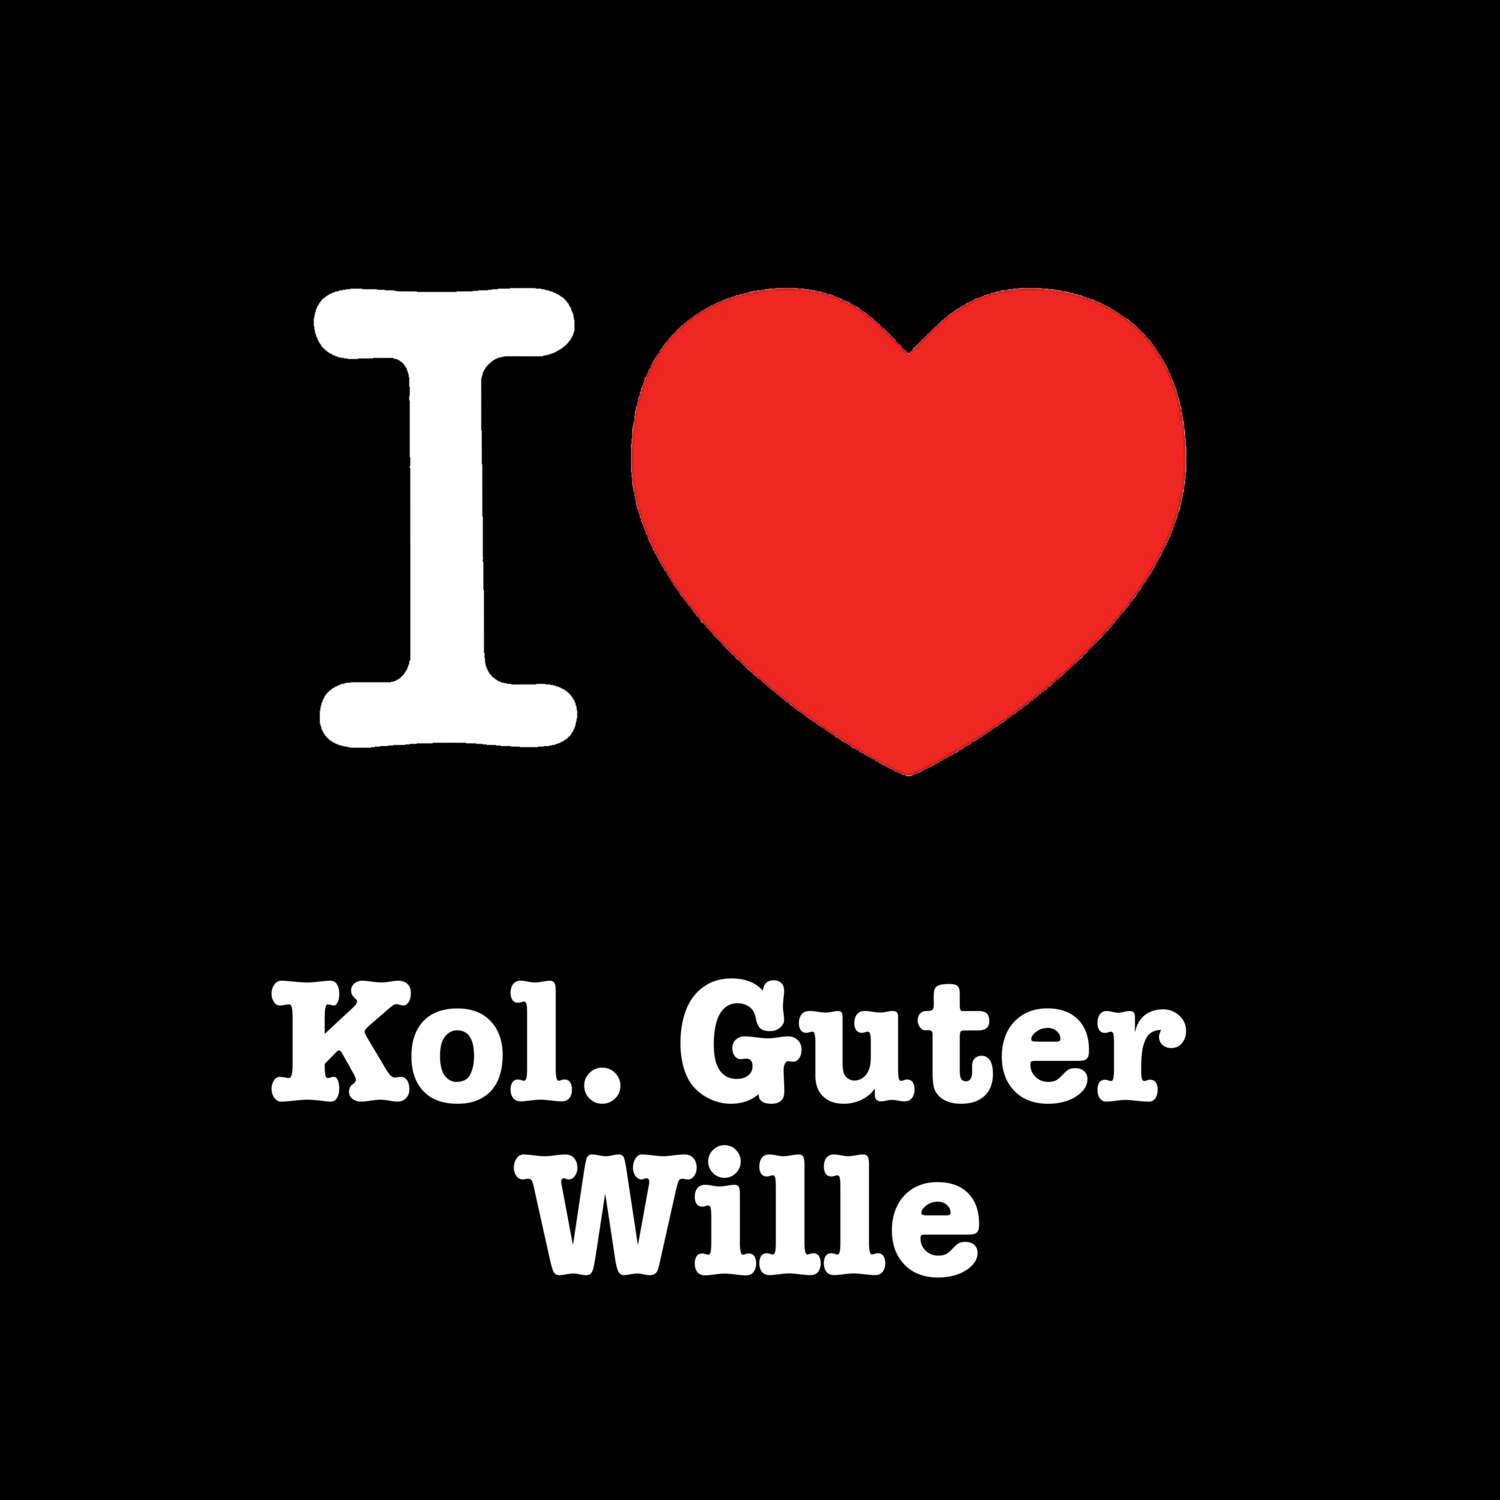 Kol. Guter Wille T-Shirt »I love«